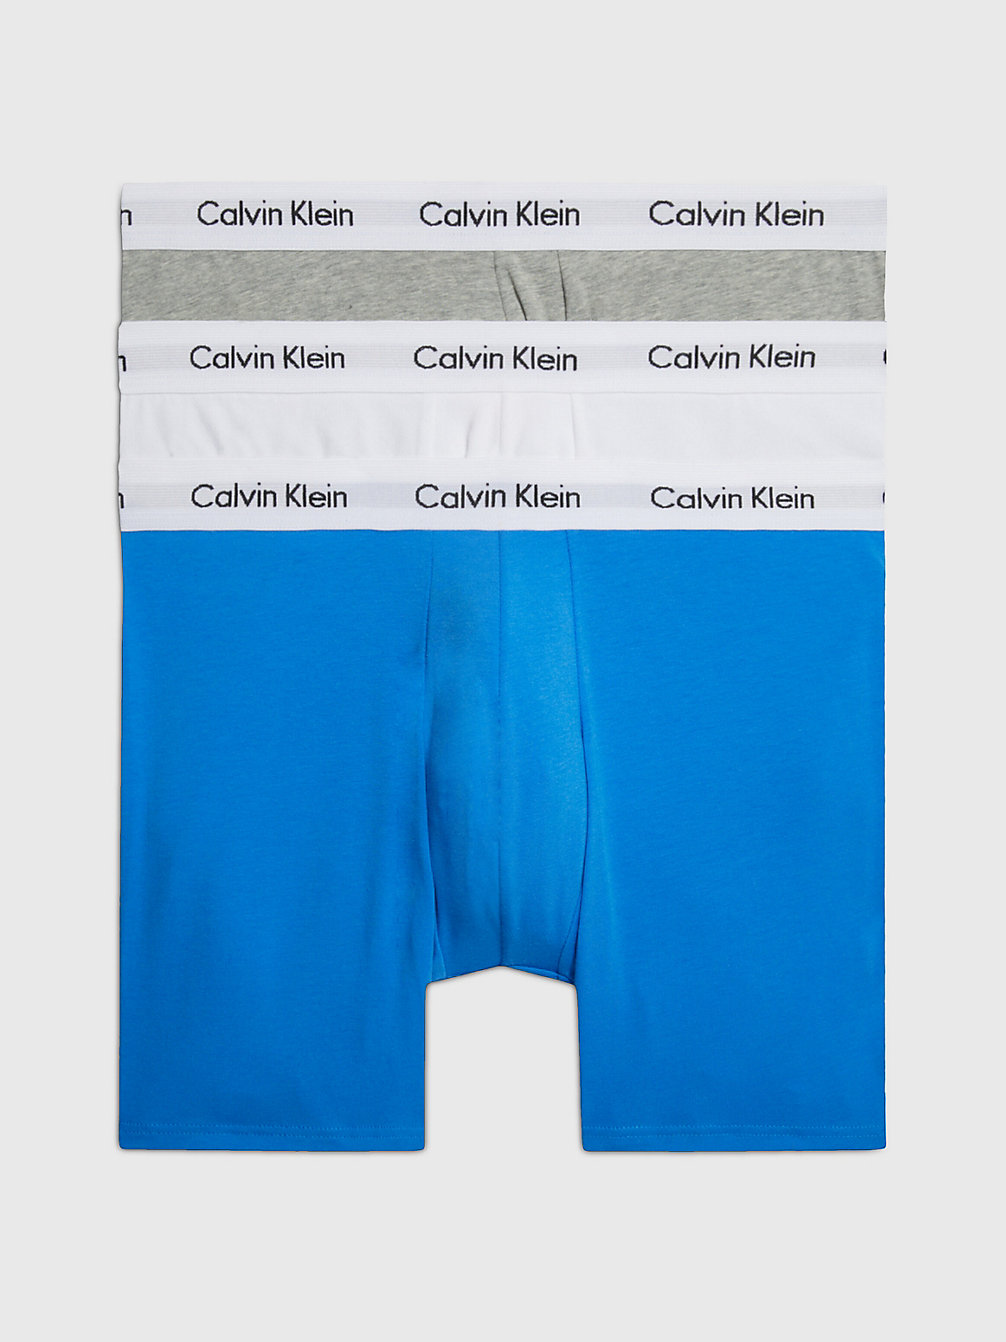 Boxer Aderenti Lunghi In Confezione Da 3 - Cotton Stretch > GRY HTHR, WHT, PALACE BLUE W/ WH WB > undefined uomo > Calvin Klein